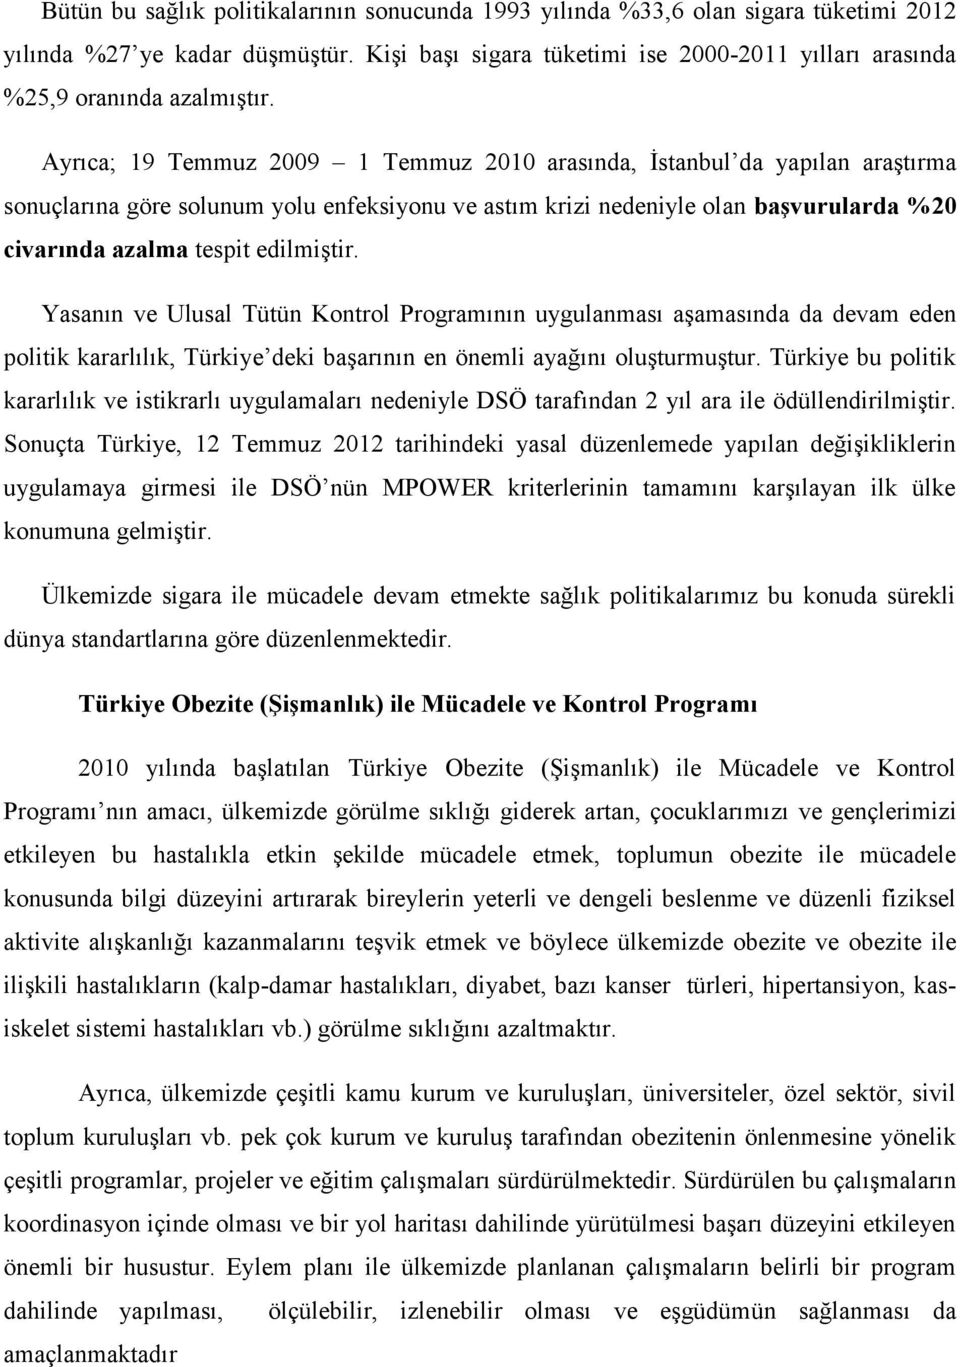 Ayrıca; 19 Temmuz 2009 1 Temmuz 2010 arasında, İstanbul da yapılan araştırma sonuçlarına göre solunum yolu enfeksiyonu ve astım krizi nedeniyle olan başvurularda %20 civarında azalma tespit